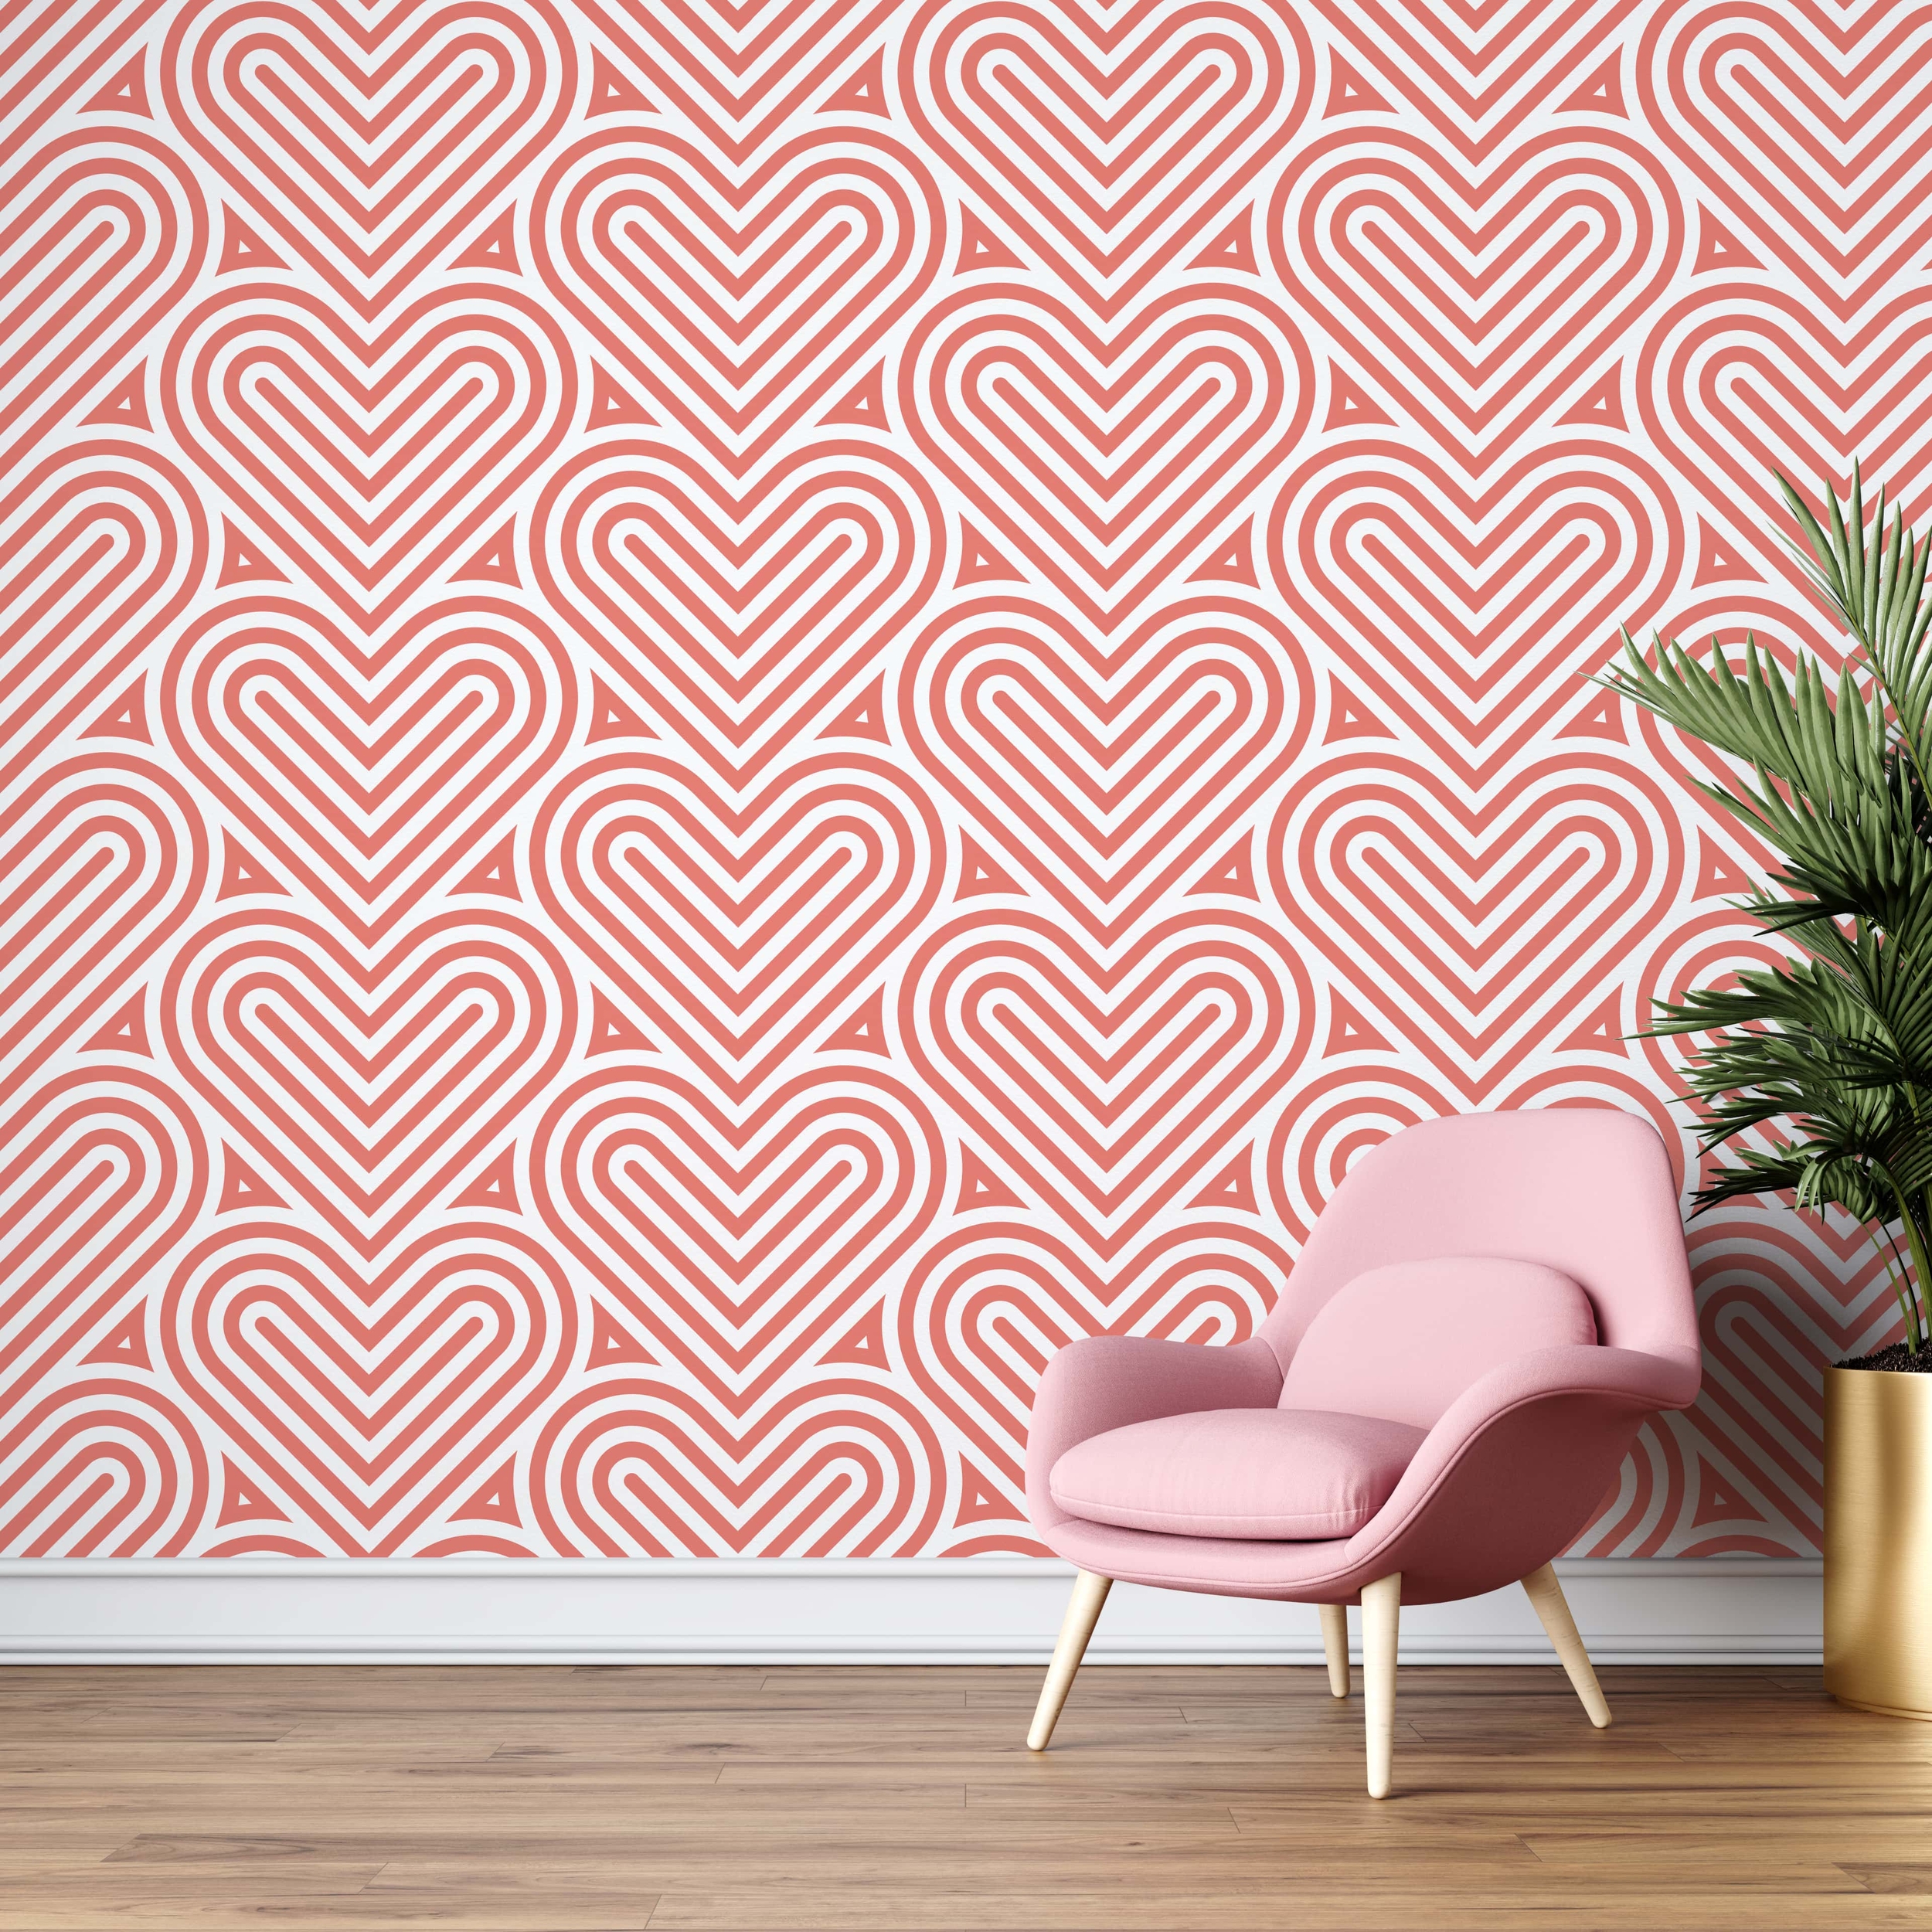 PP51-mur-papier-peint-adhesif-decoratif-revetement-vinyle-coeurs-abstraits-renovation-meuble-mur-min